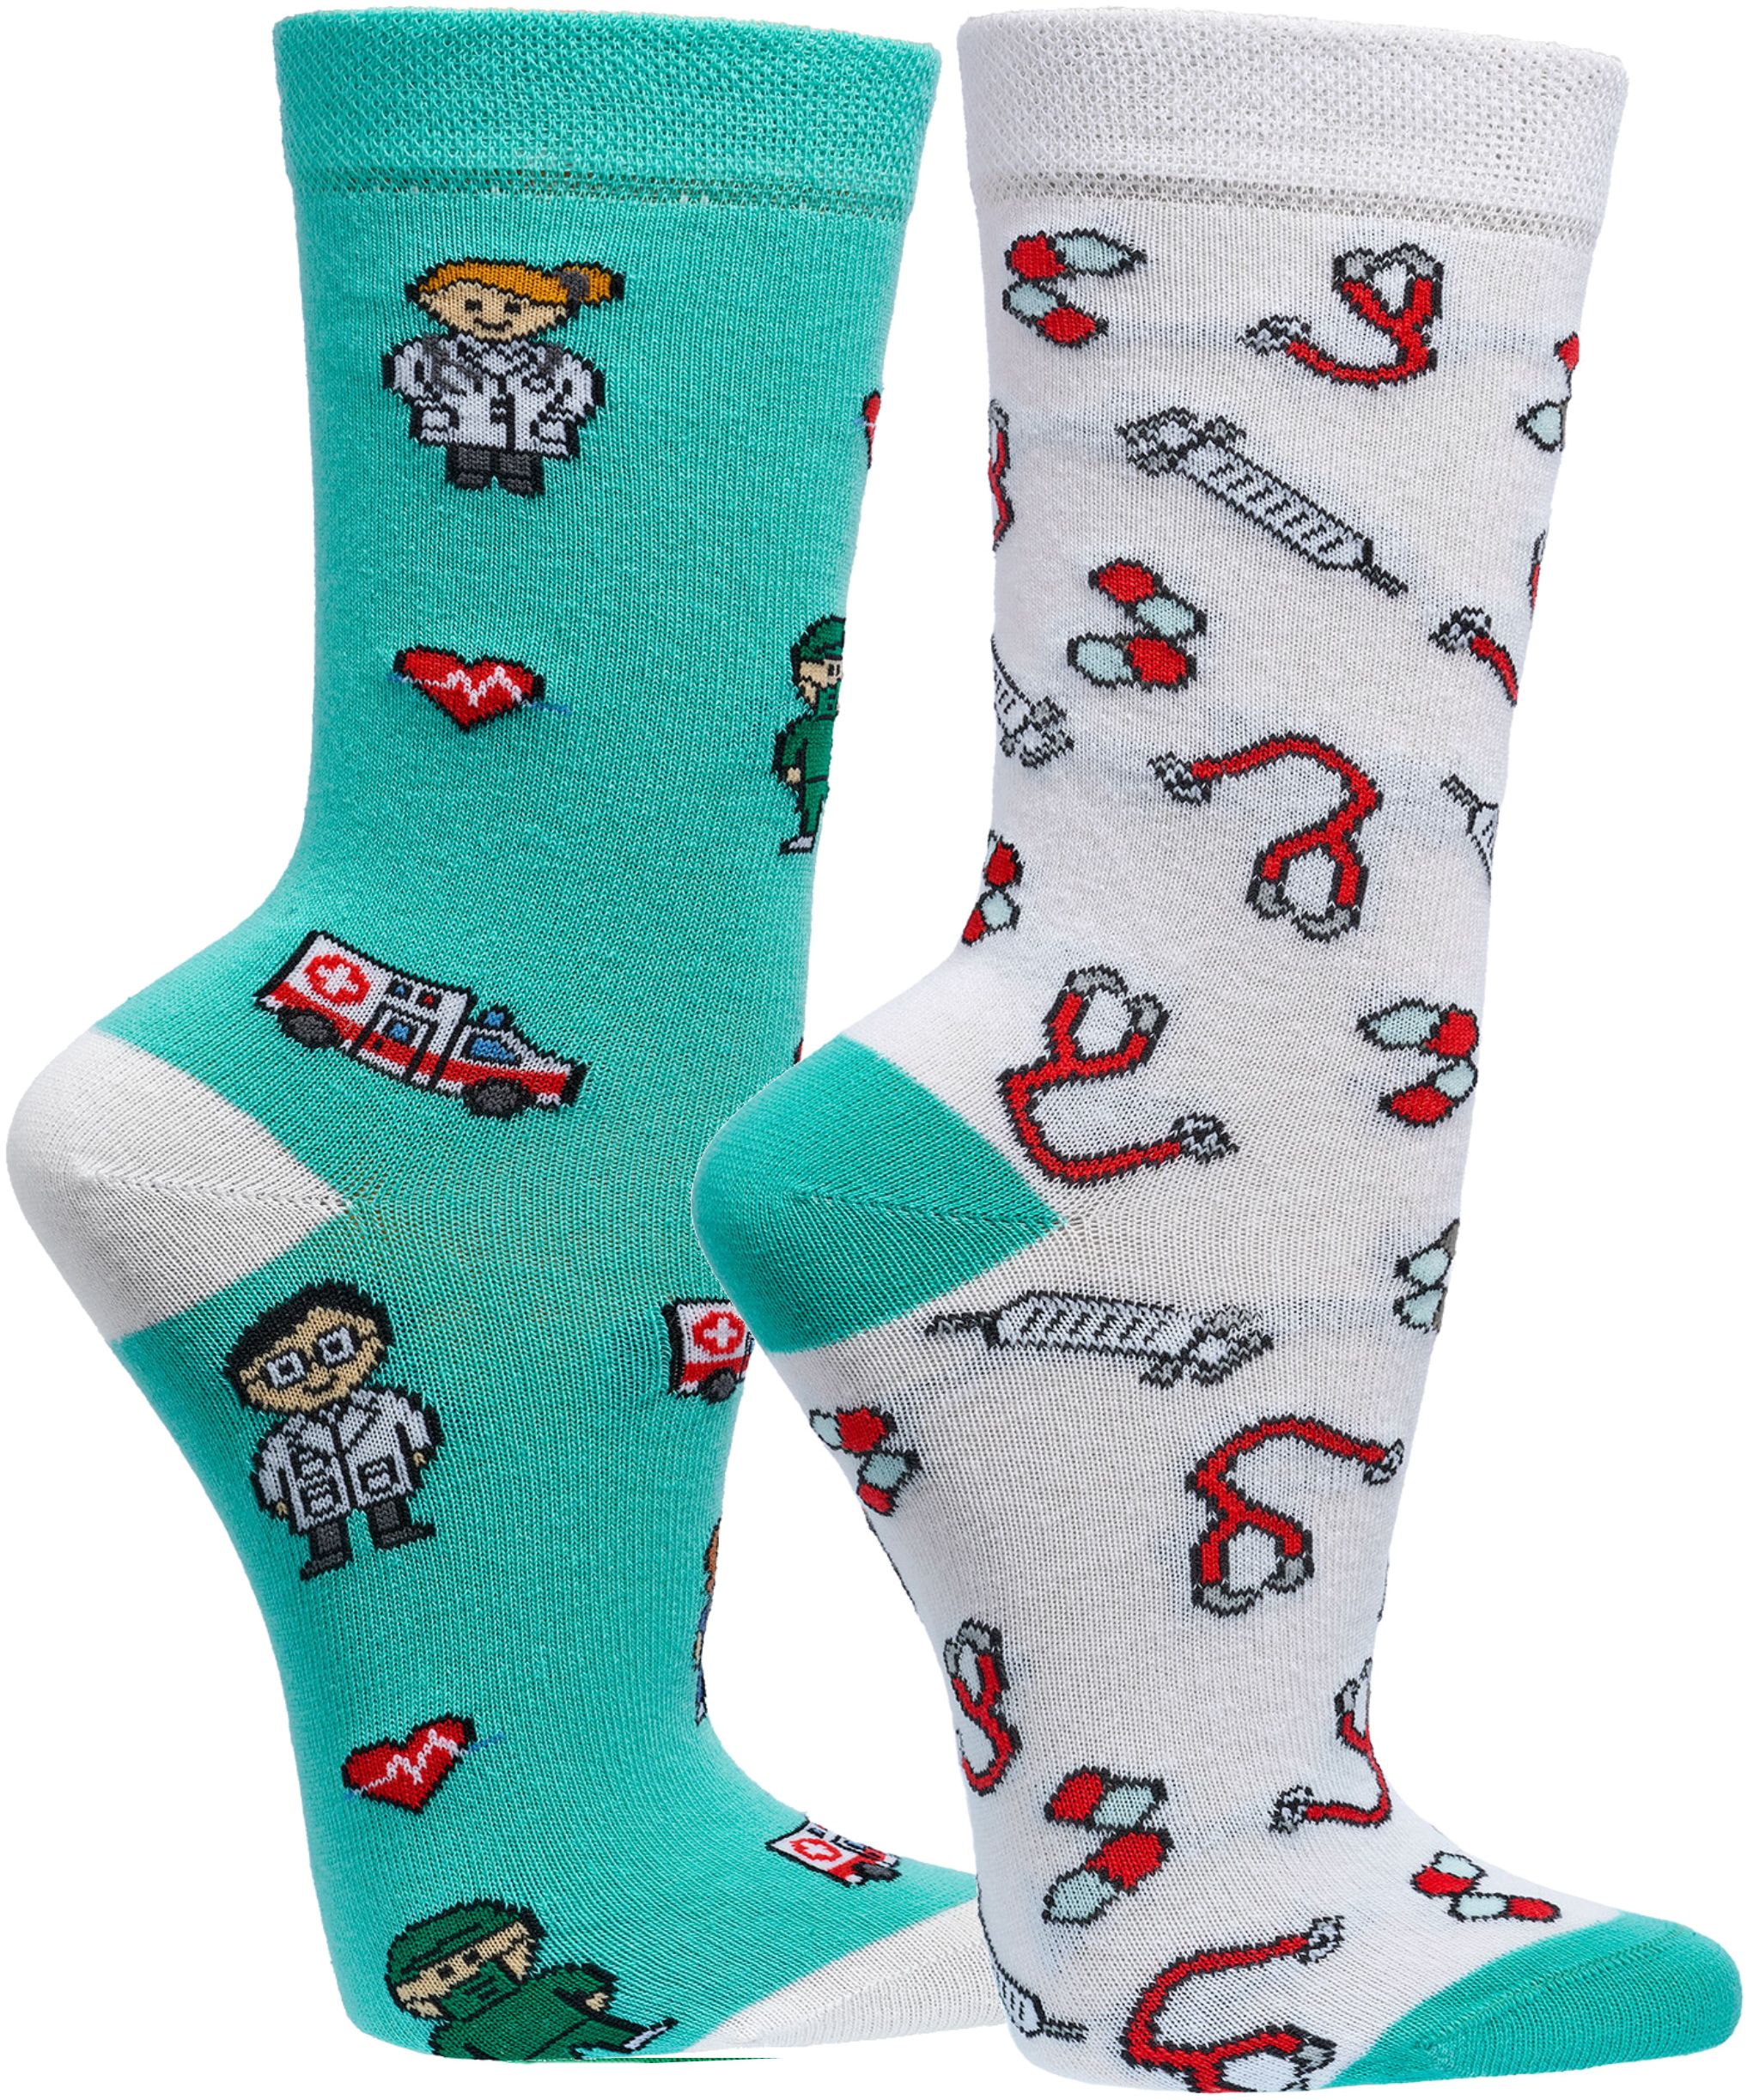 MEDIZIN  Witzige Socken Lustige Dessin - SOCKS 4 FUN - Mehr Spaß im Alltag für Teenager, Damen und Herren, 2 Paar